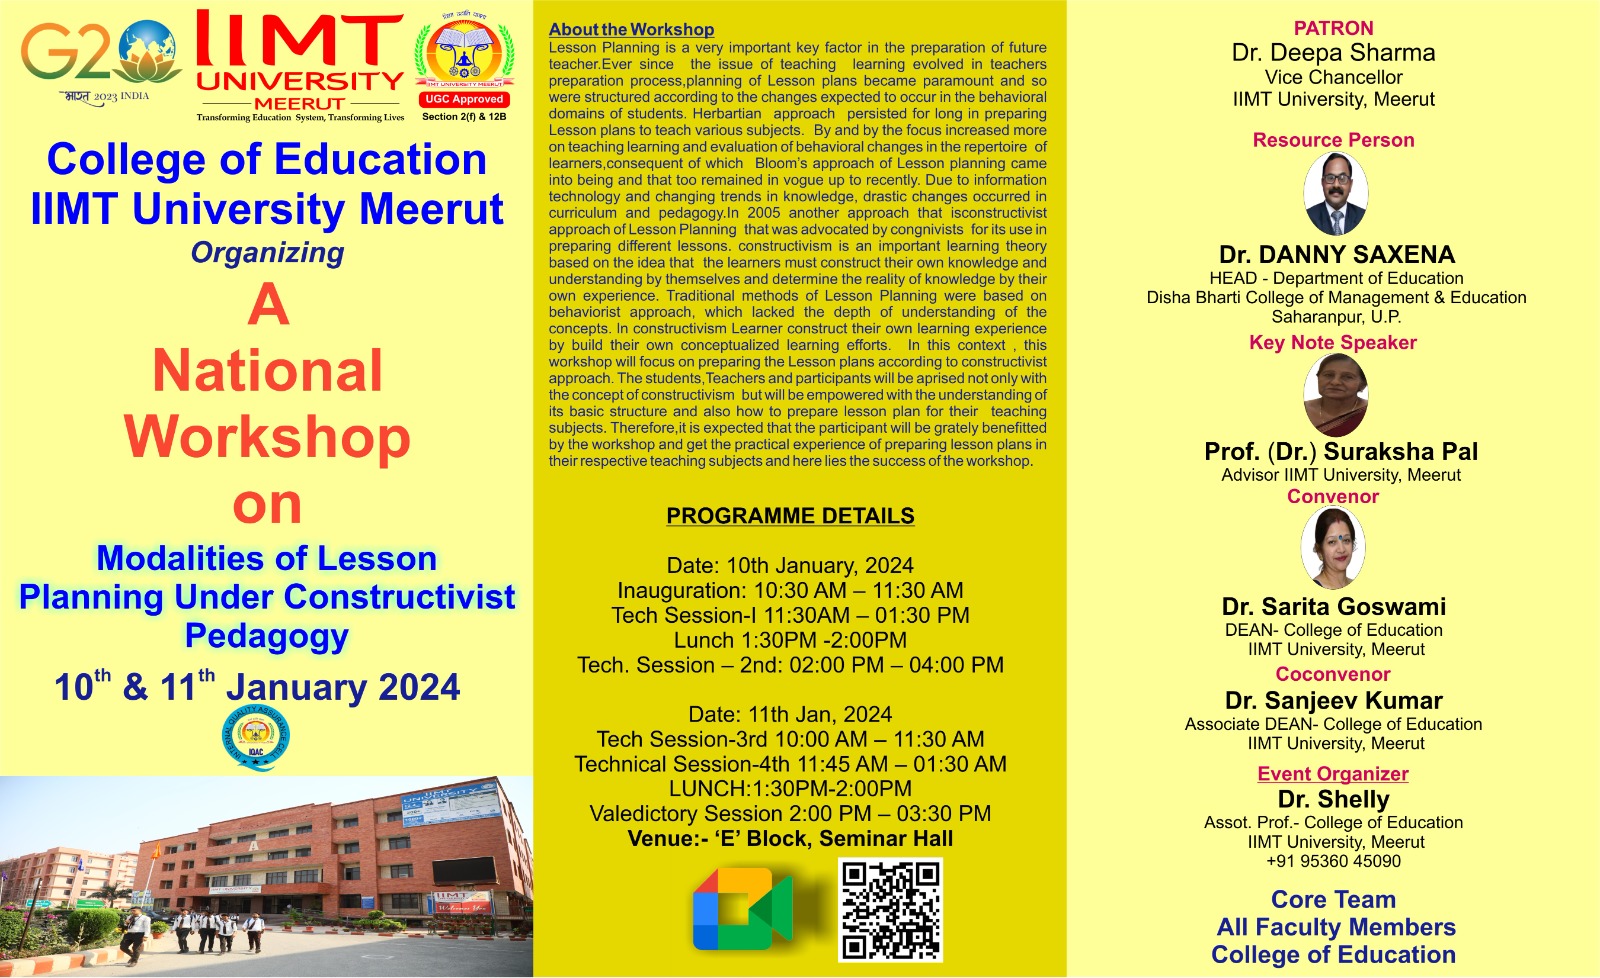 iimt university - national workshop